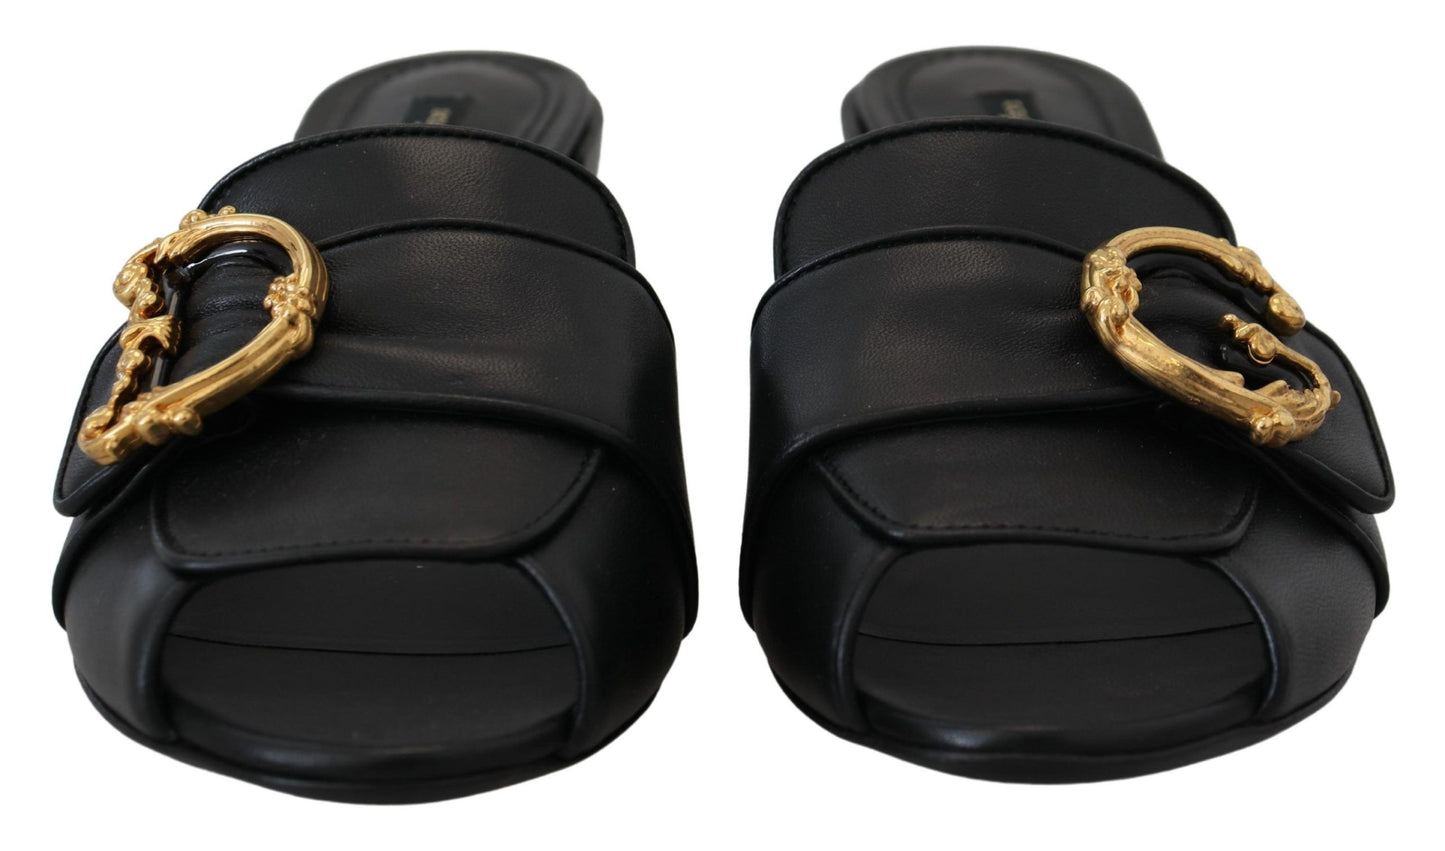 Elegant Black Leather Sandals with DG Emblem